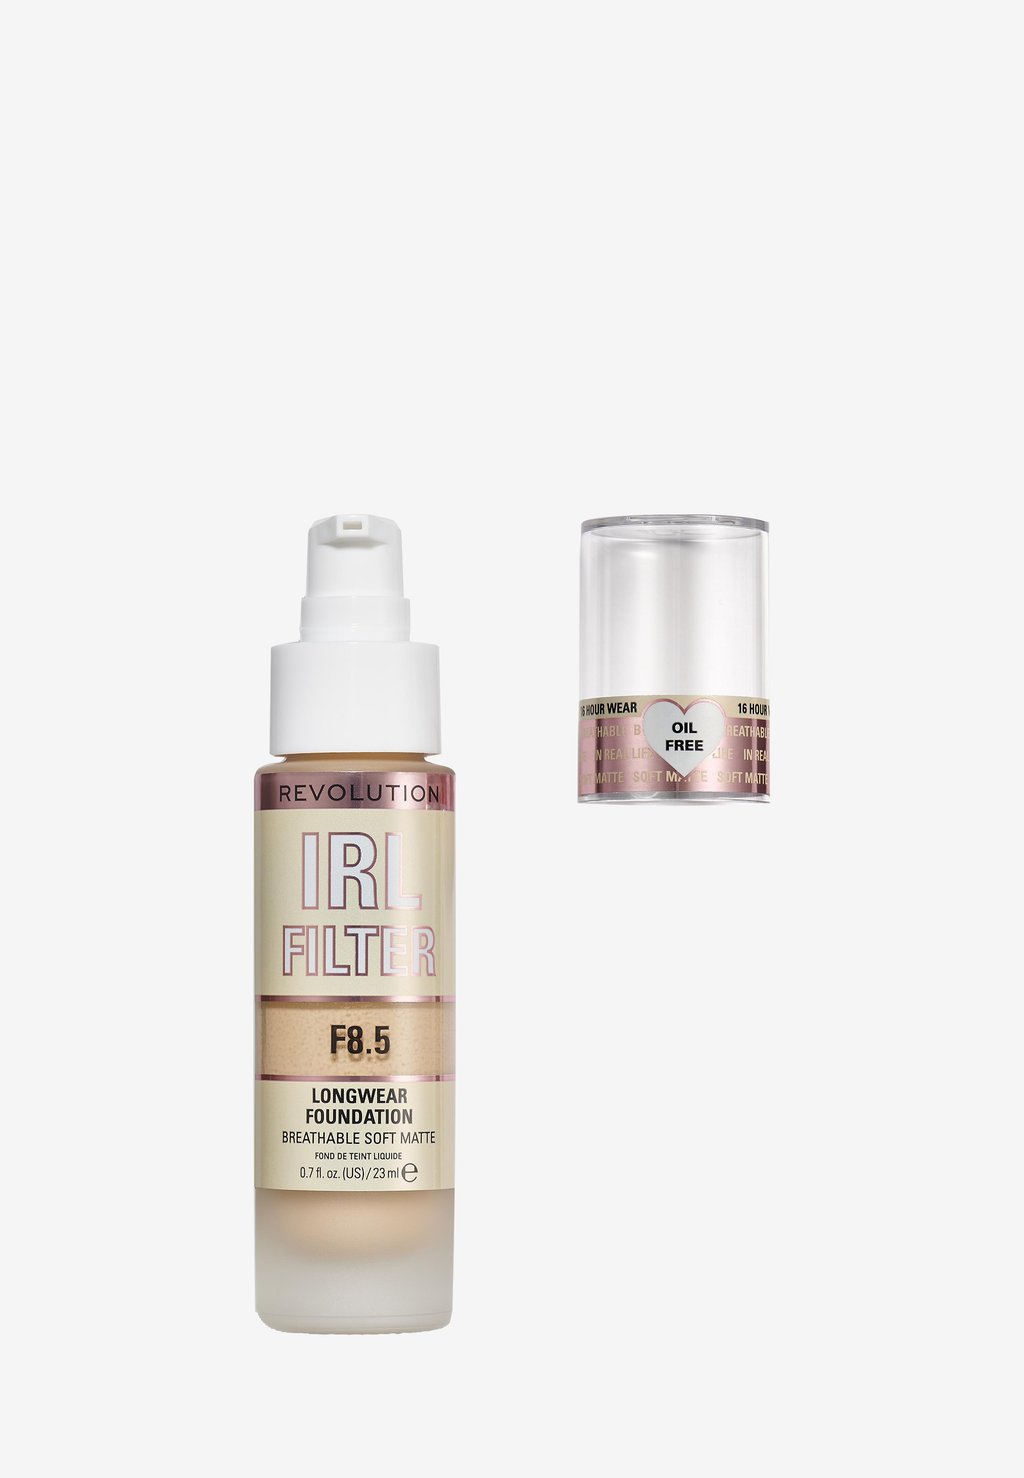 Тональный крем Irl Filter Longwear Foundation Makeup Revolution, цвет f8.5